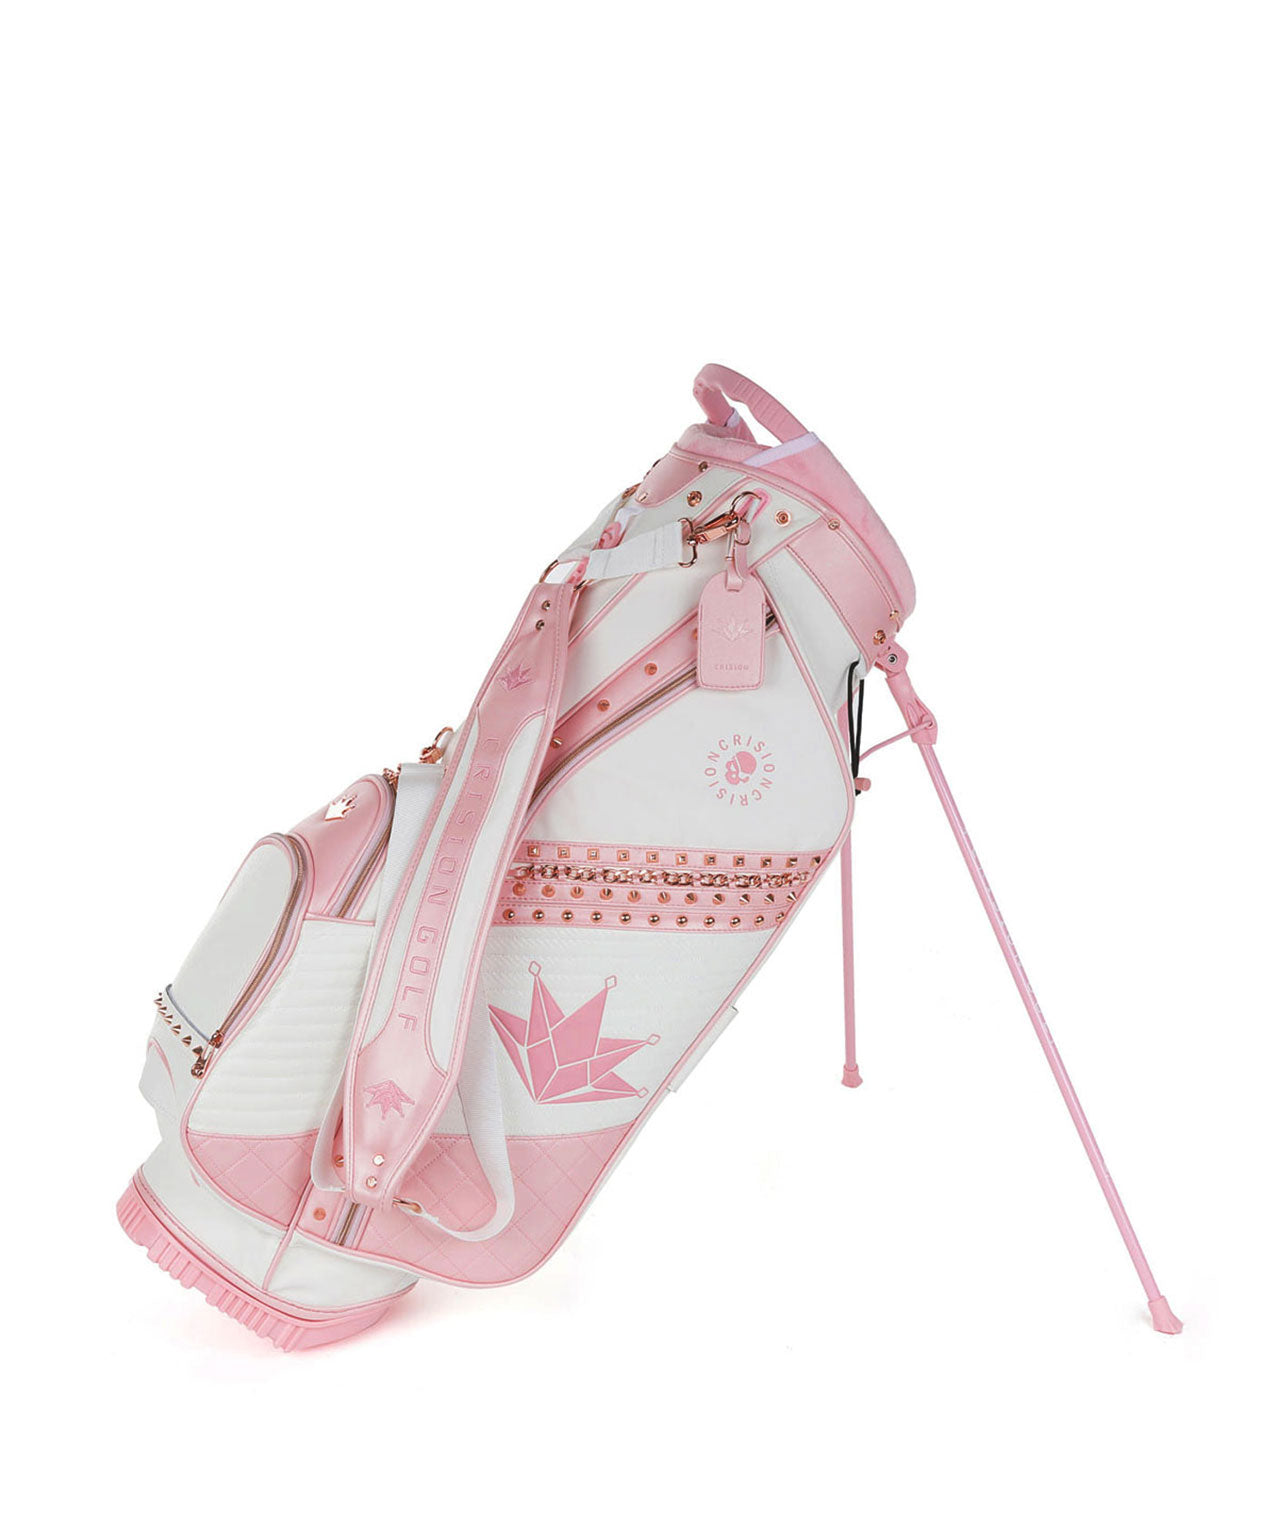 Luxury Designer Golf Bag : u/nevermindallgolf